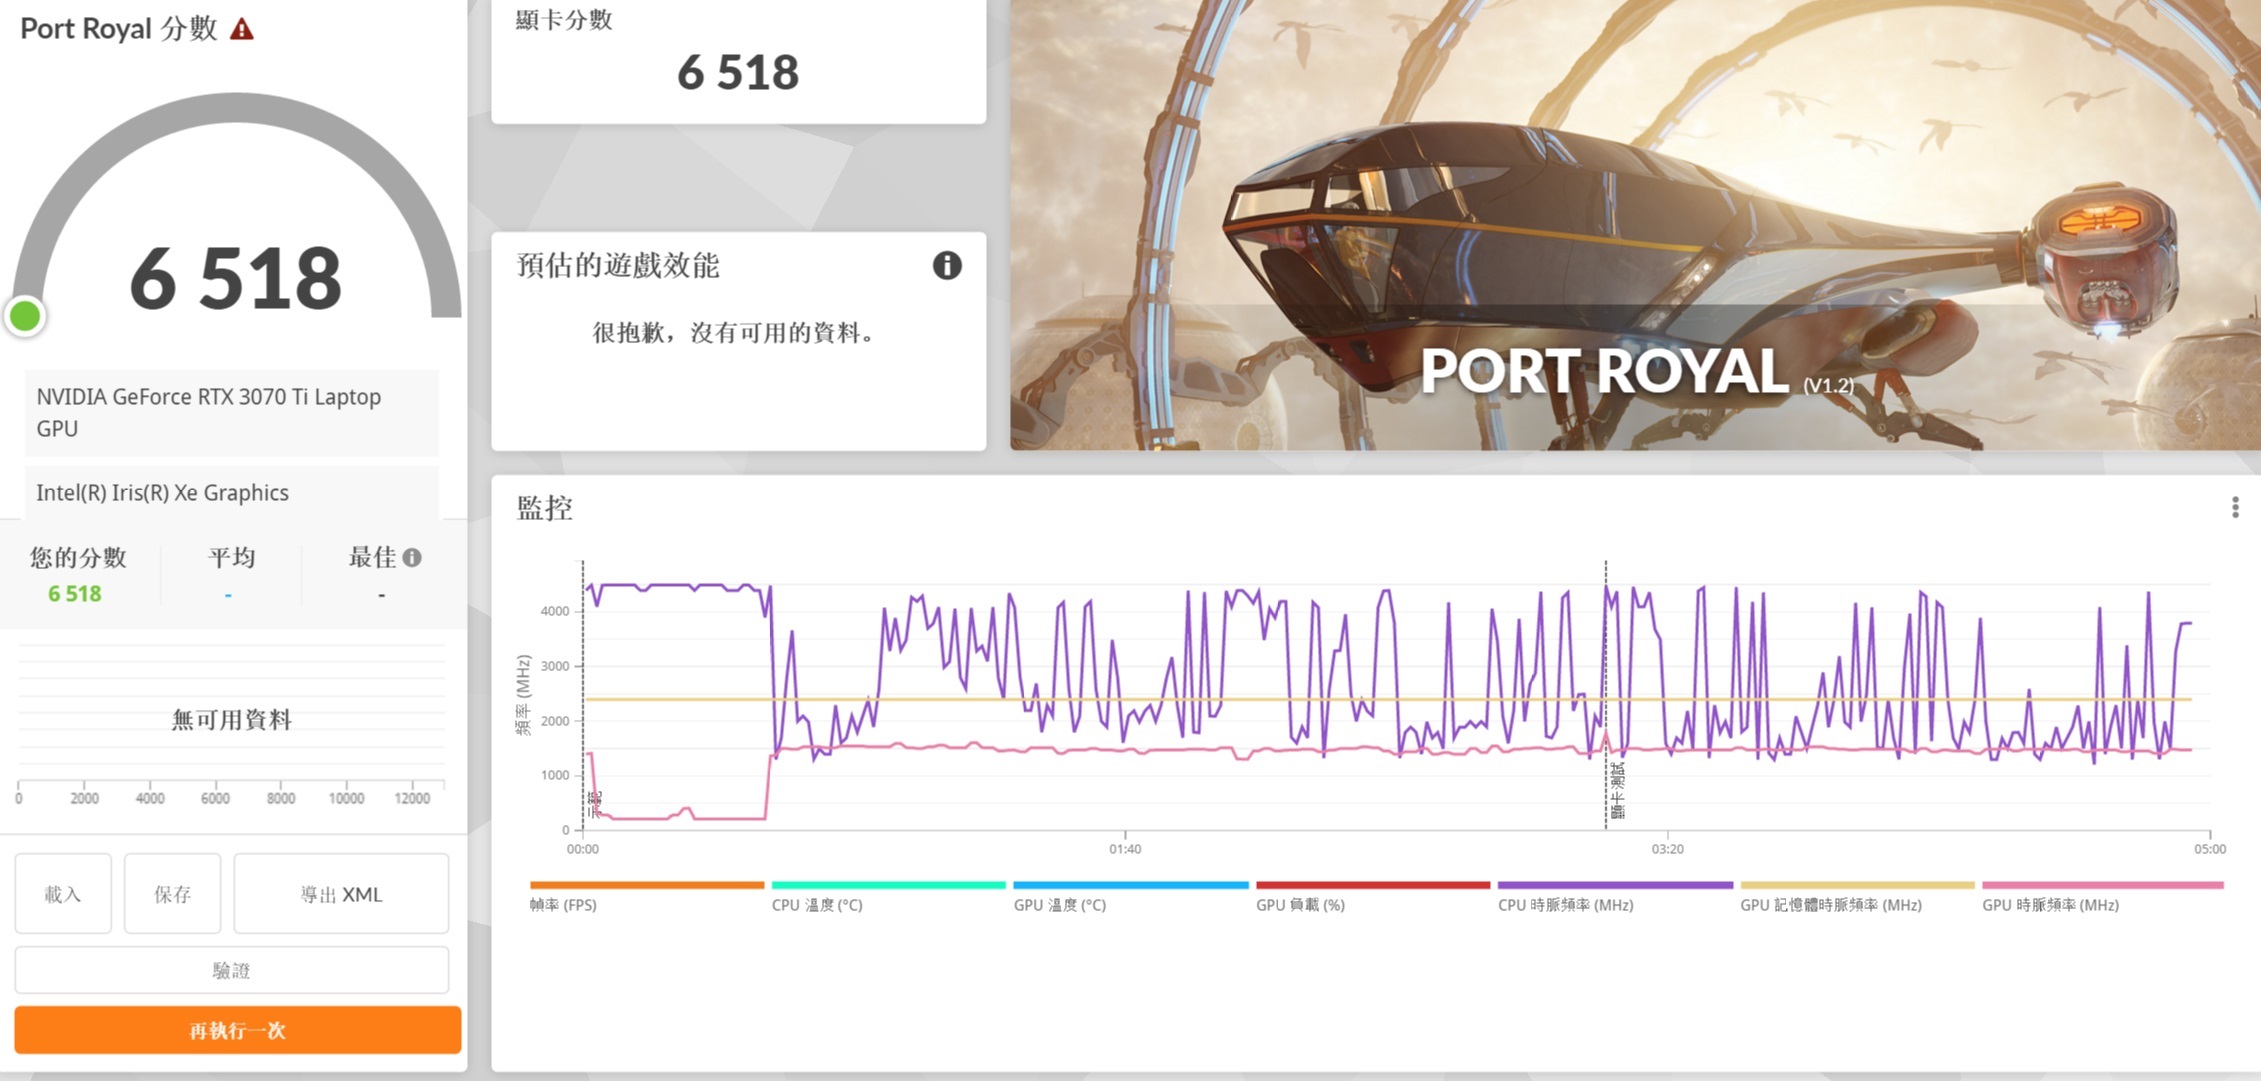 在 3DMark Port Royal 測試模式下，加入即時光影追蹤效果，獲得 6,518 分的表現。